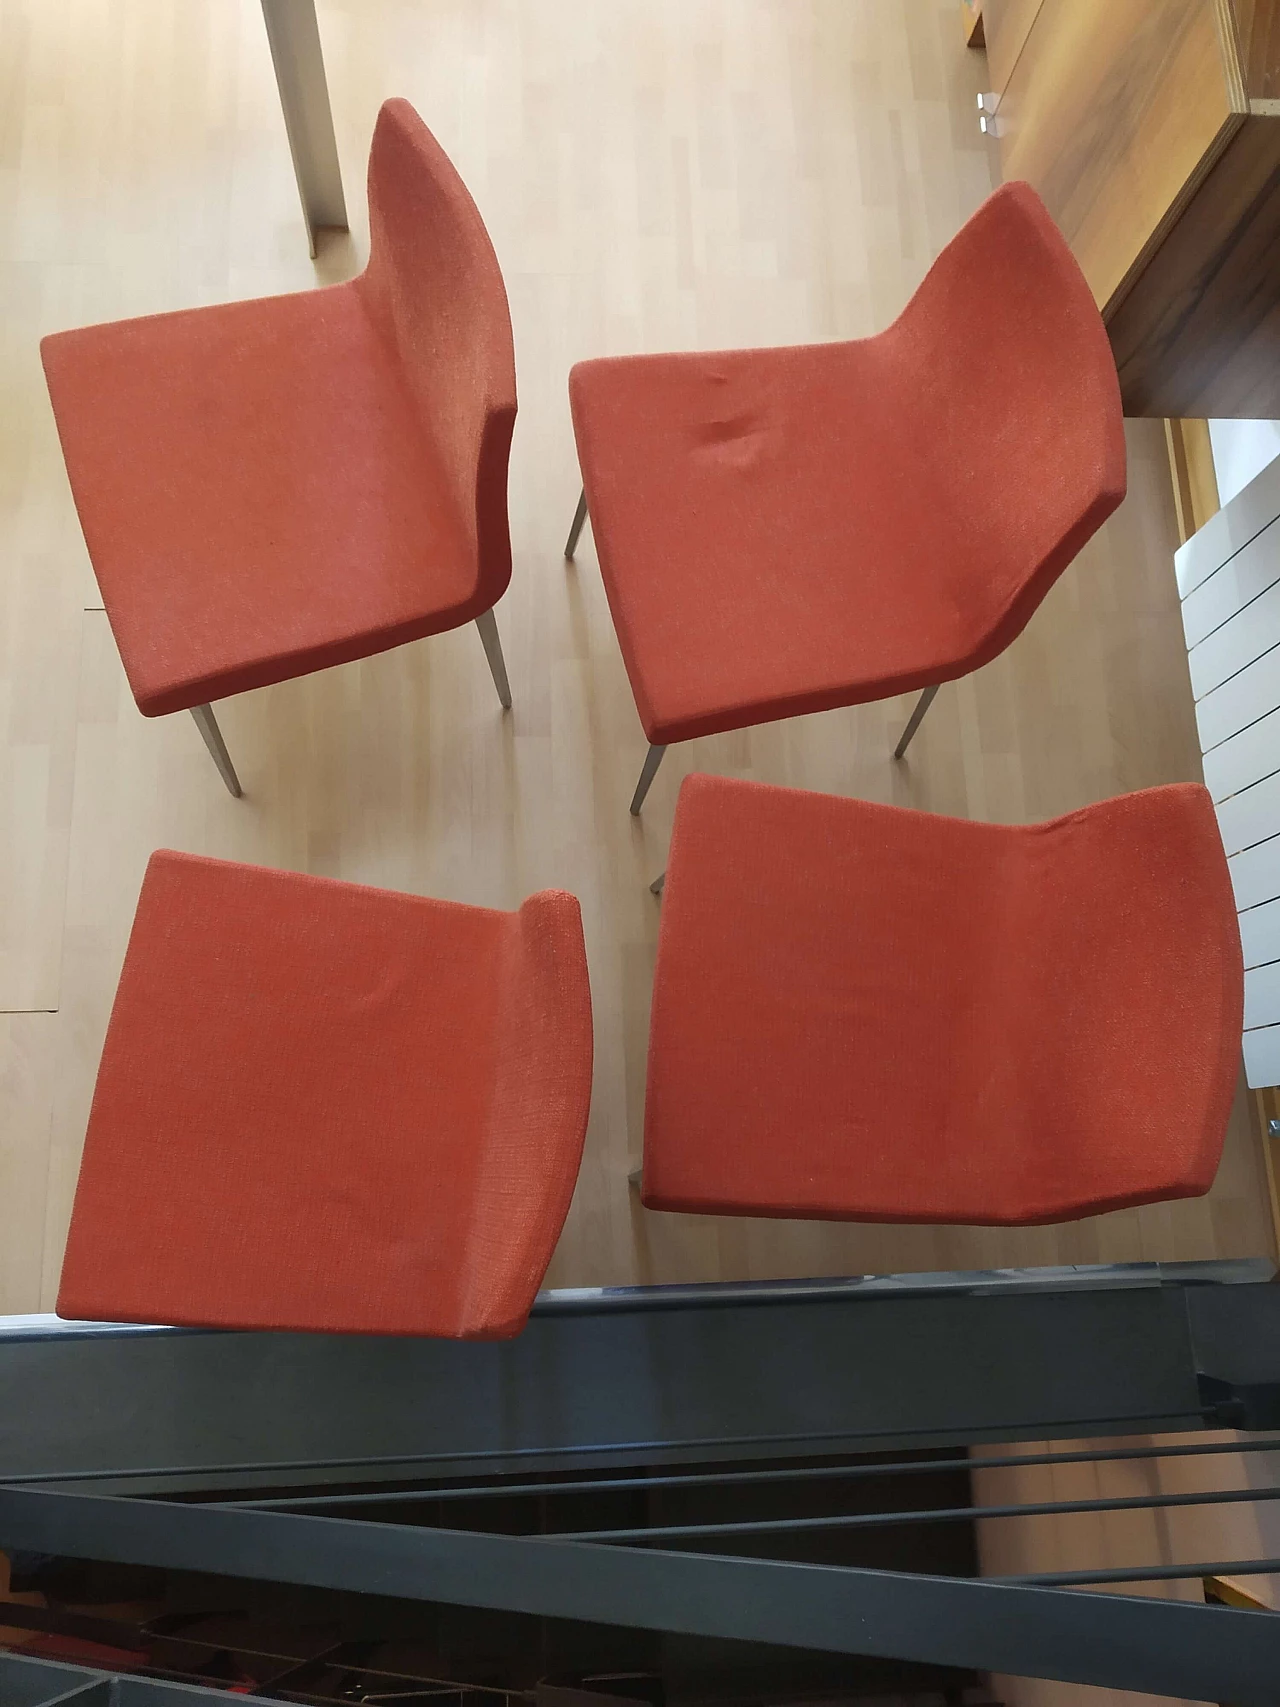 4 Hella Chairs by Mauro Lipparini for MisuraEmme 1477200